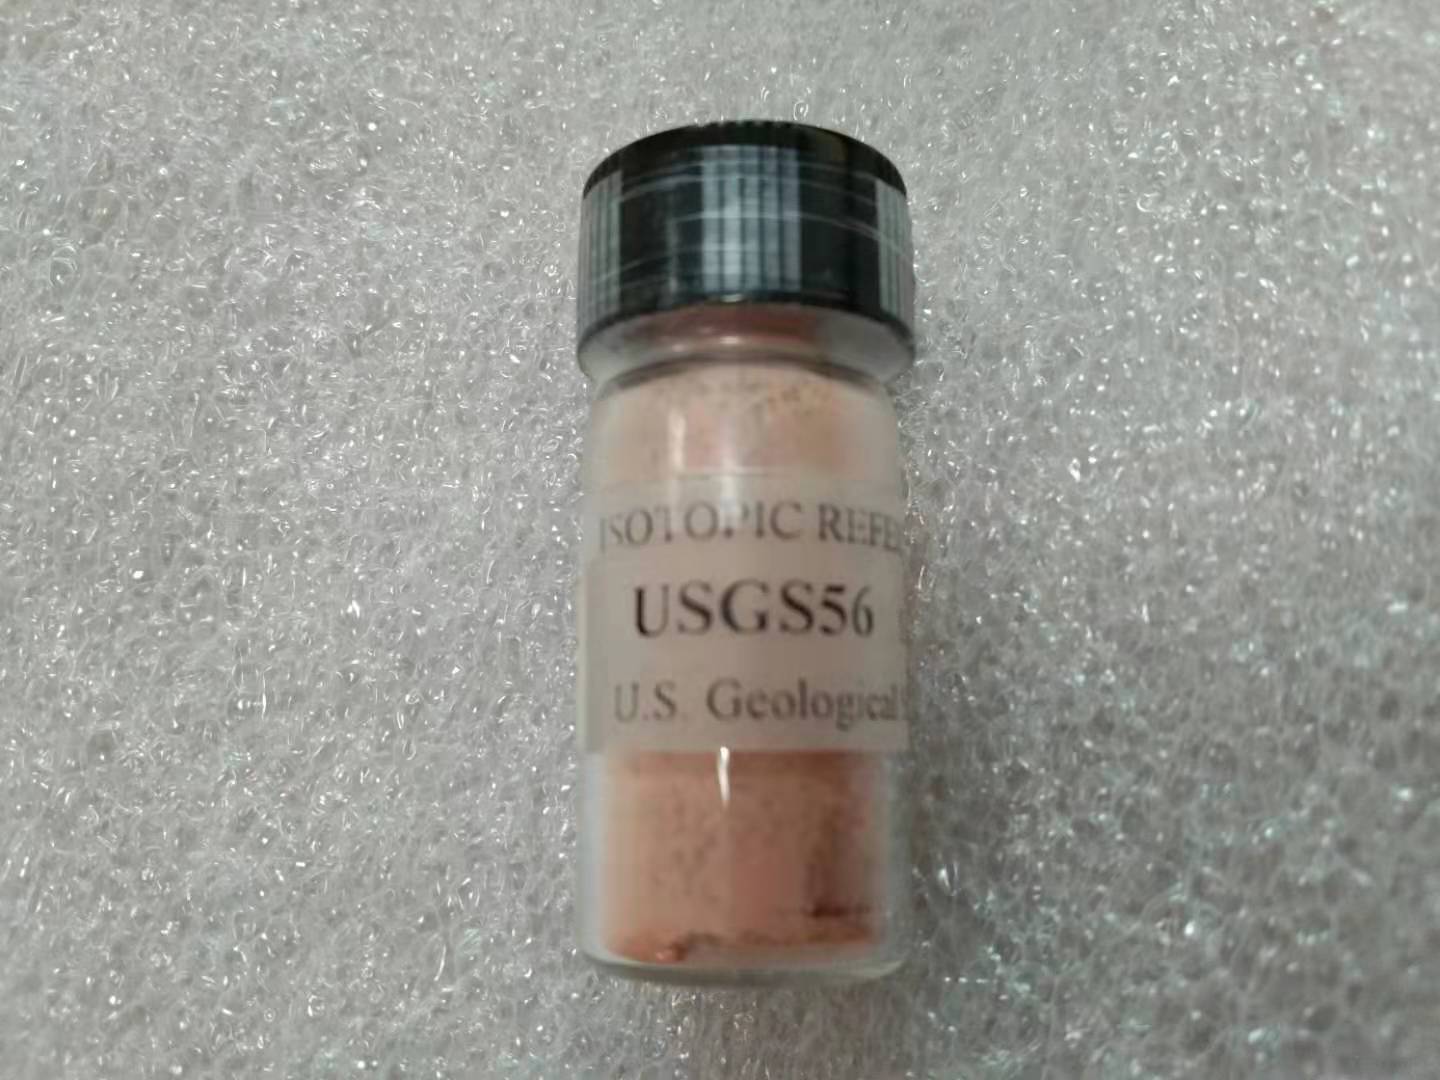 USGS56,South African red ivorywood powder,南非红象牙木粉